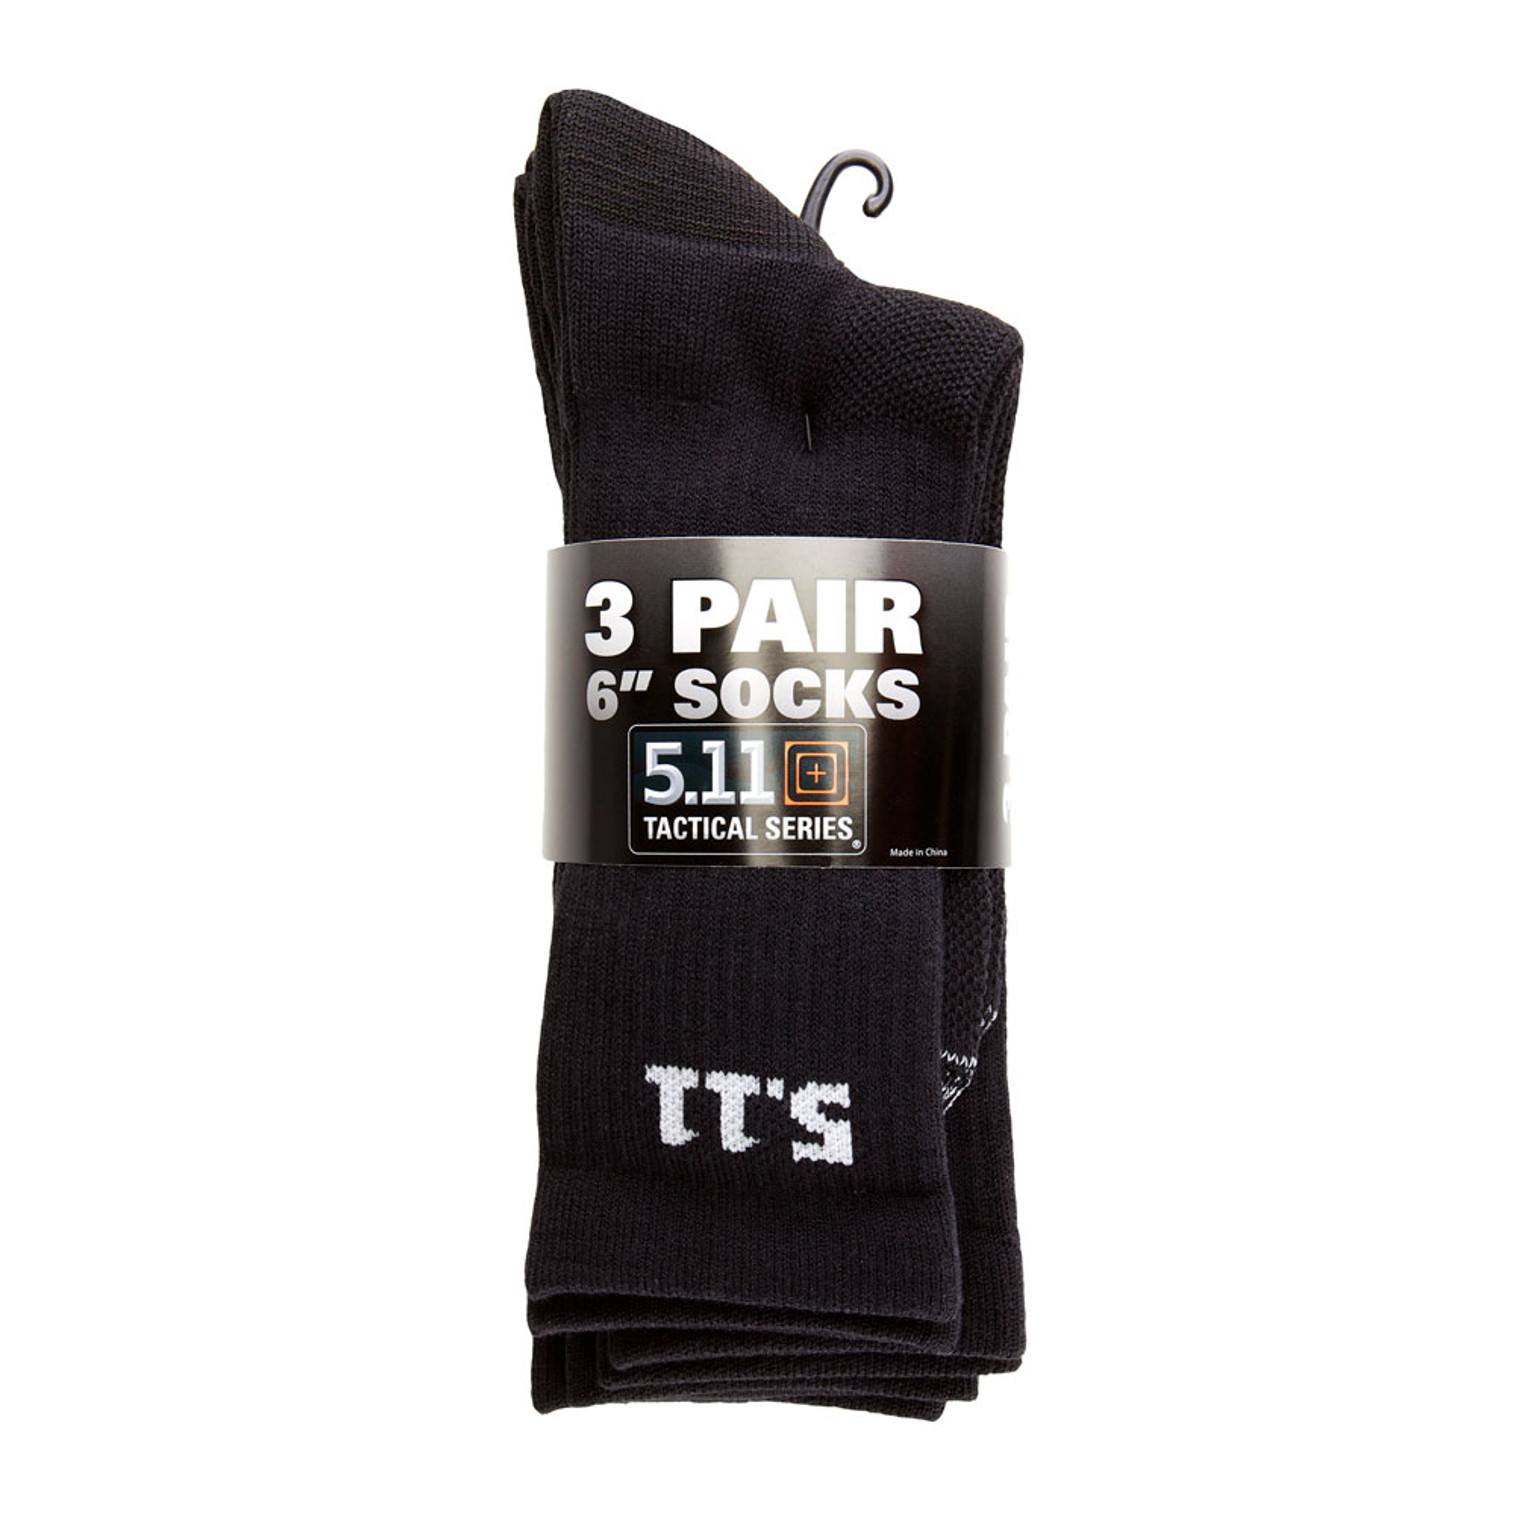 5.11 3 Pack 6" Socks - Black